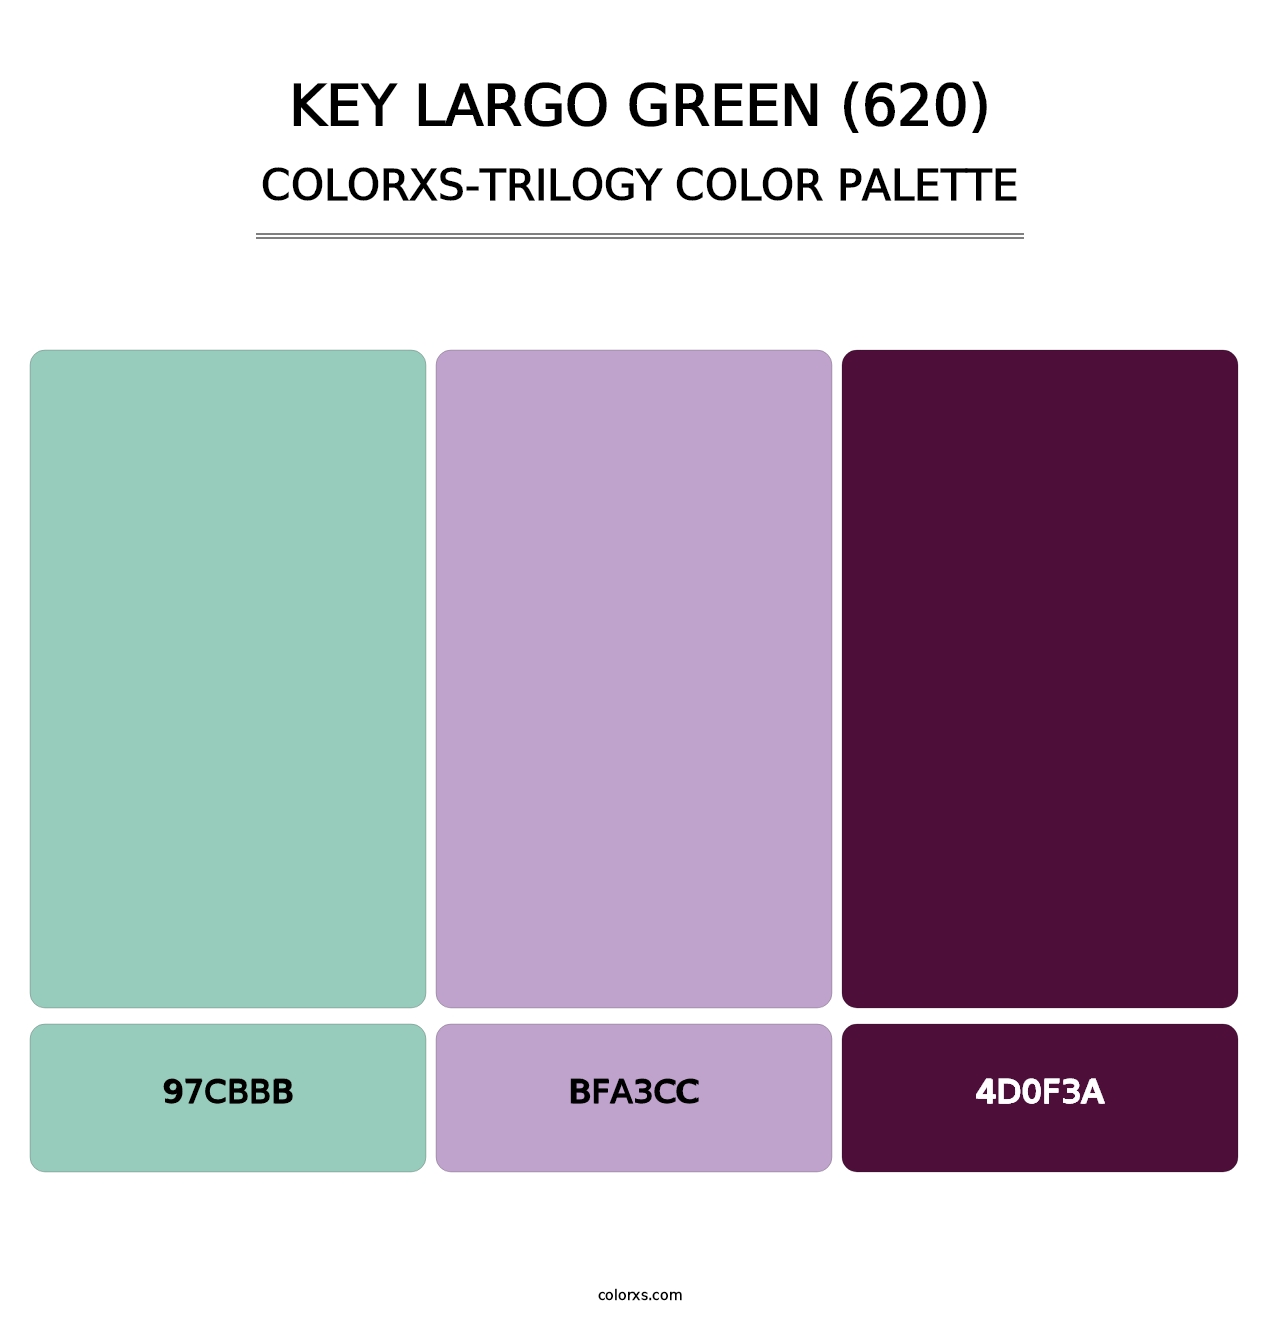 Key Largo Green (620) - Colorxs Trilogy Palette